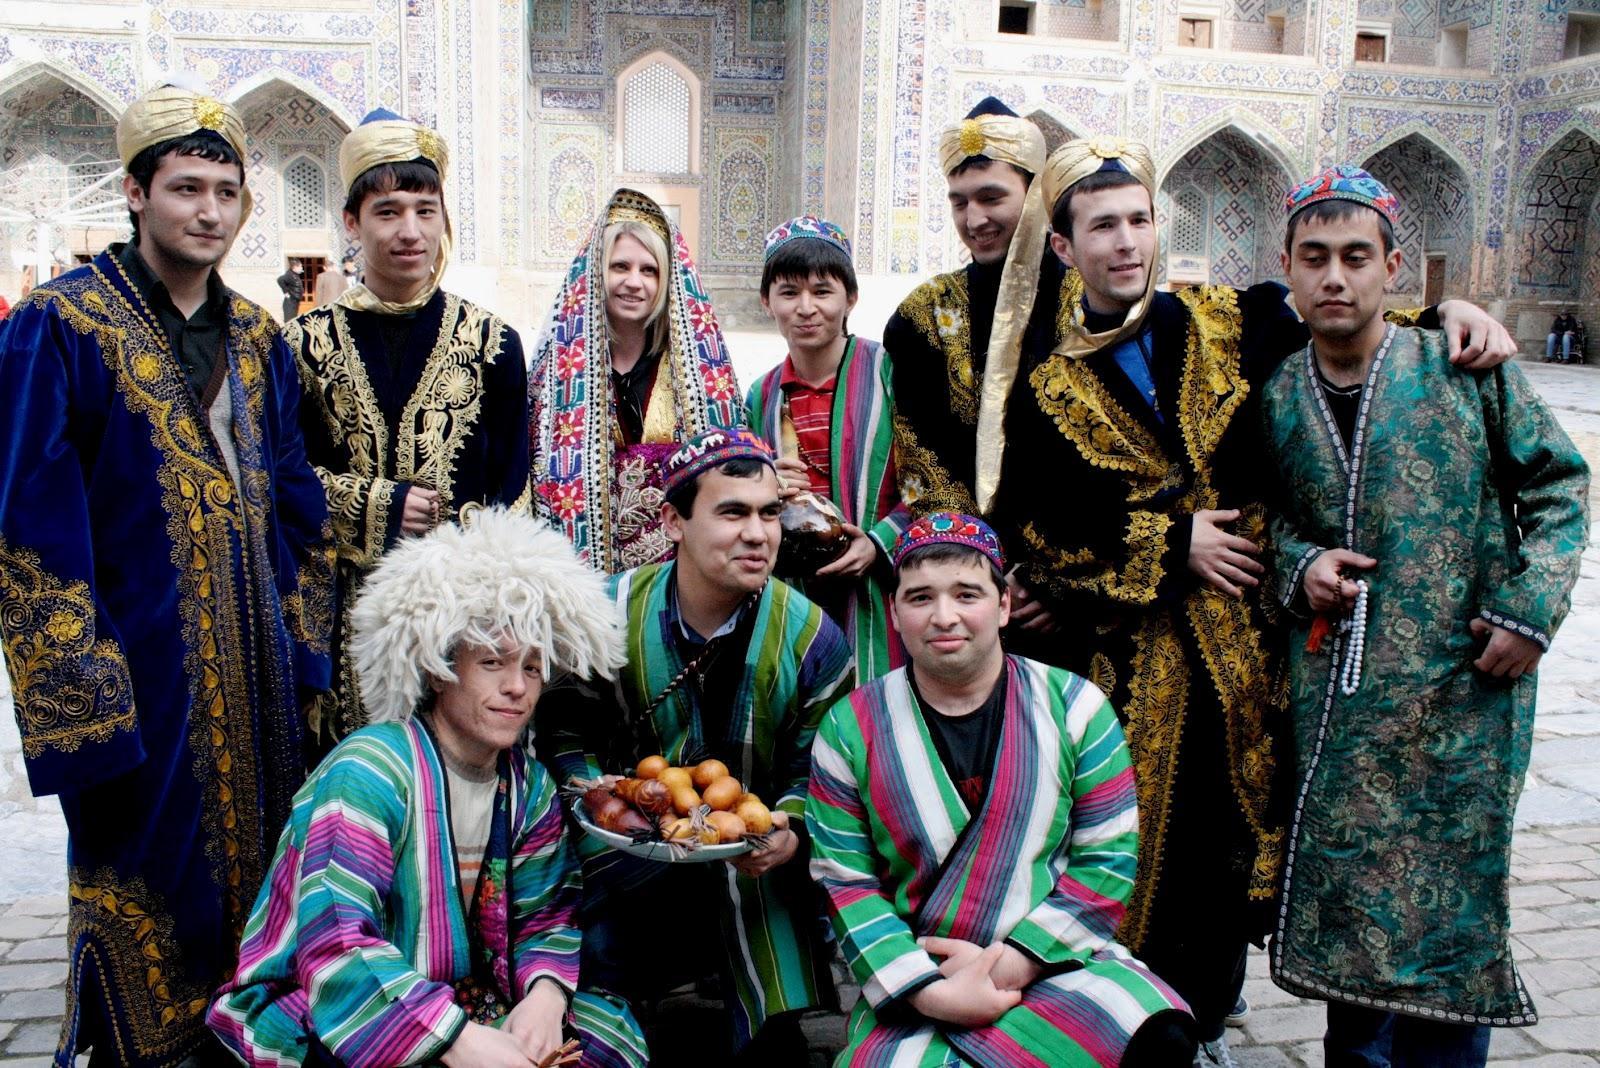 乌兹别克斯坦隆重庆祝庆祝独立23周年【高清大图】 - 国际视野 - 华声新闻 - 华声在线